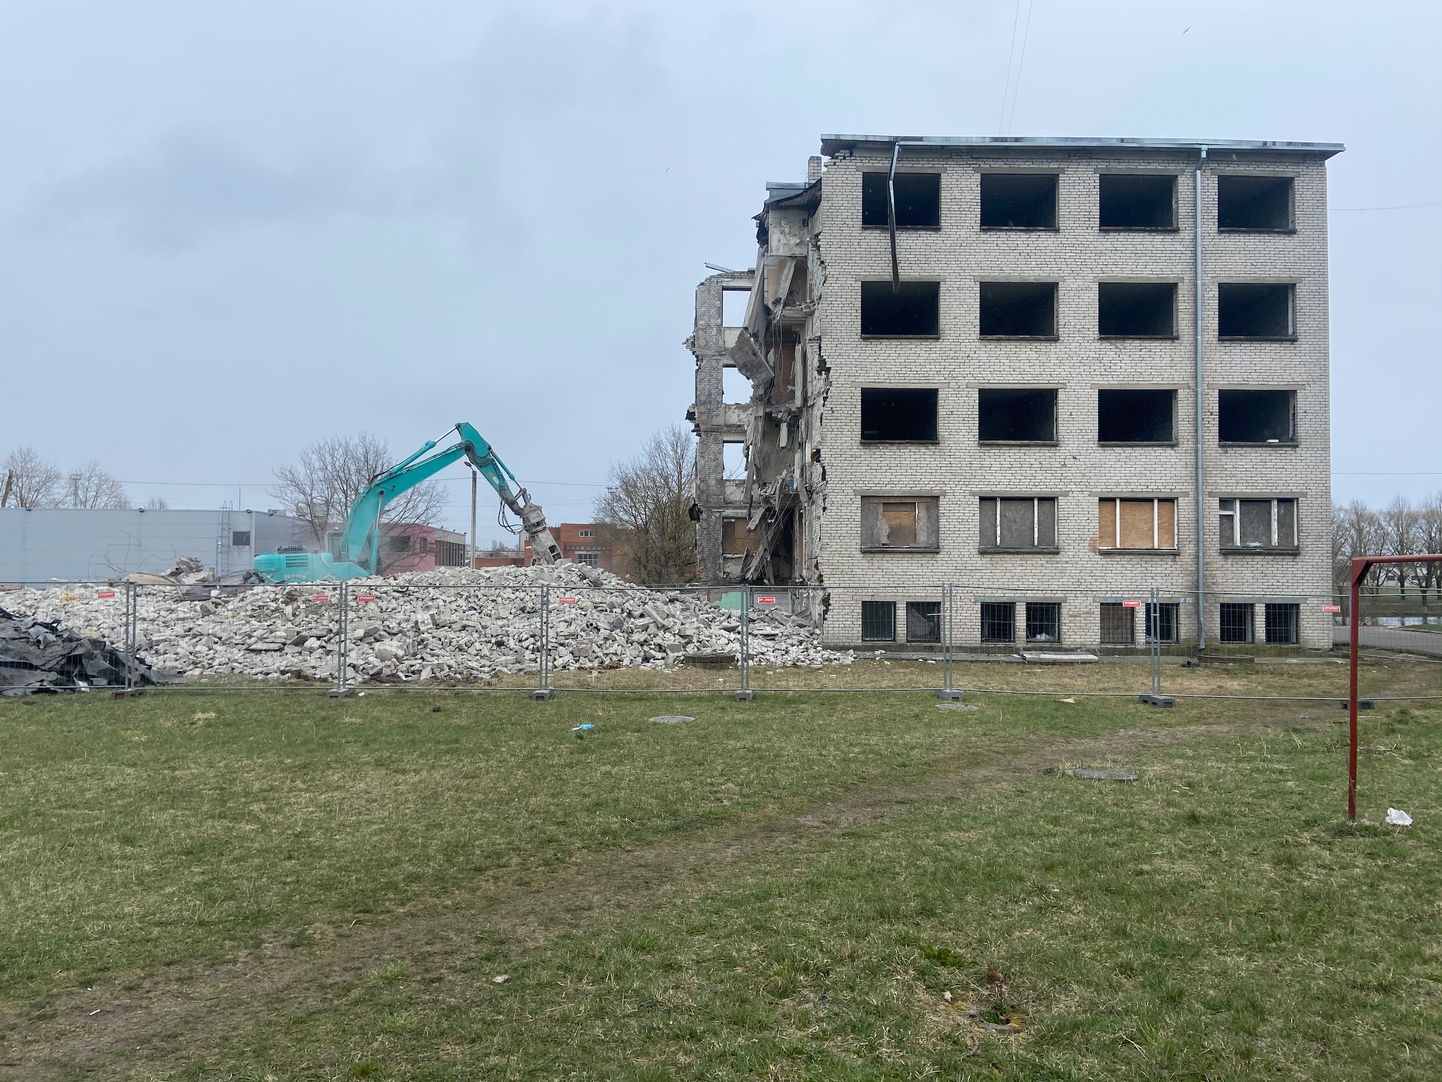 На этом месте еще в 2018 году должна была быть построена гостиница, но только в апреле 2020 года владелец снес старое общежитие и пока оставил ровный пустырь.